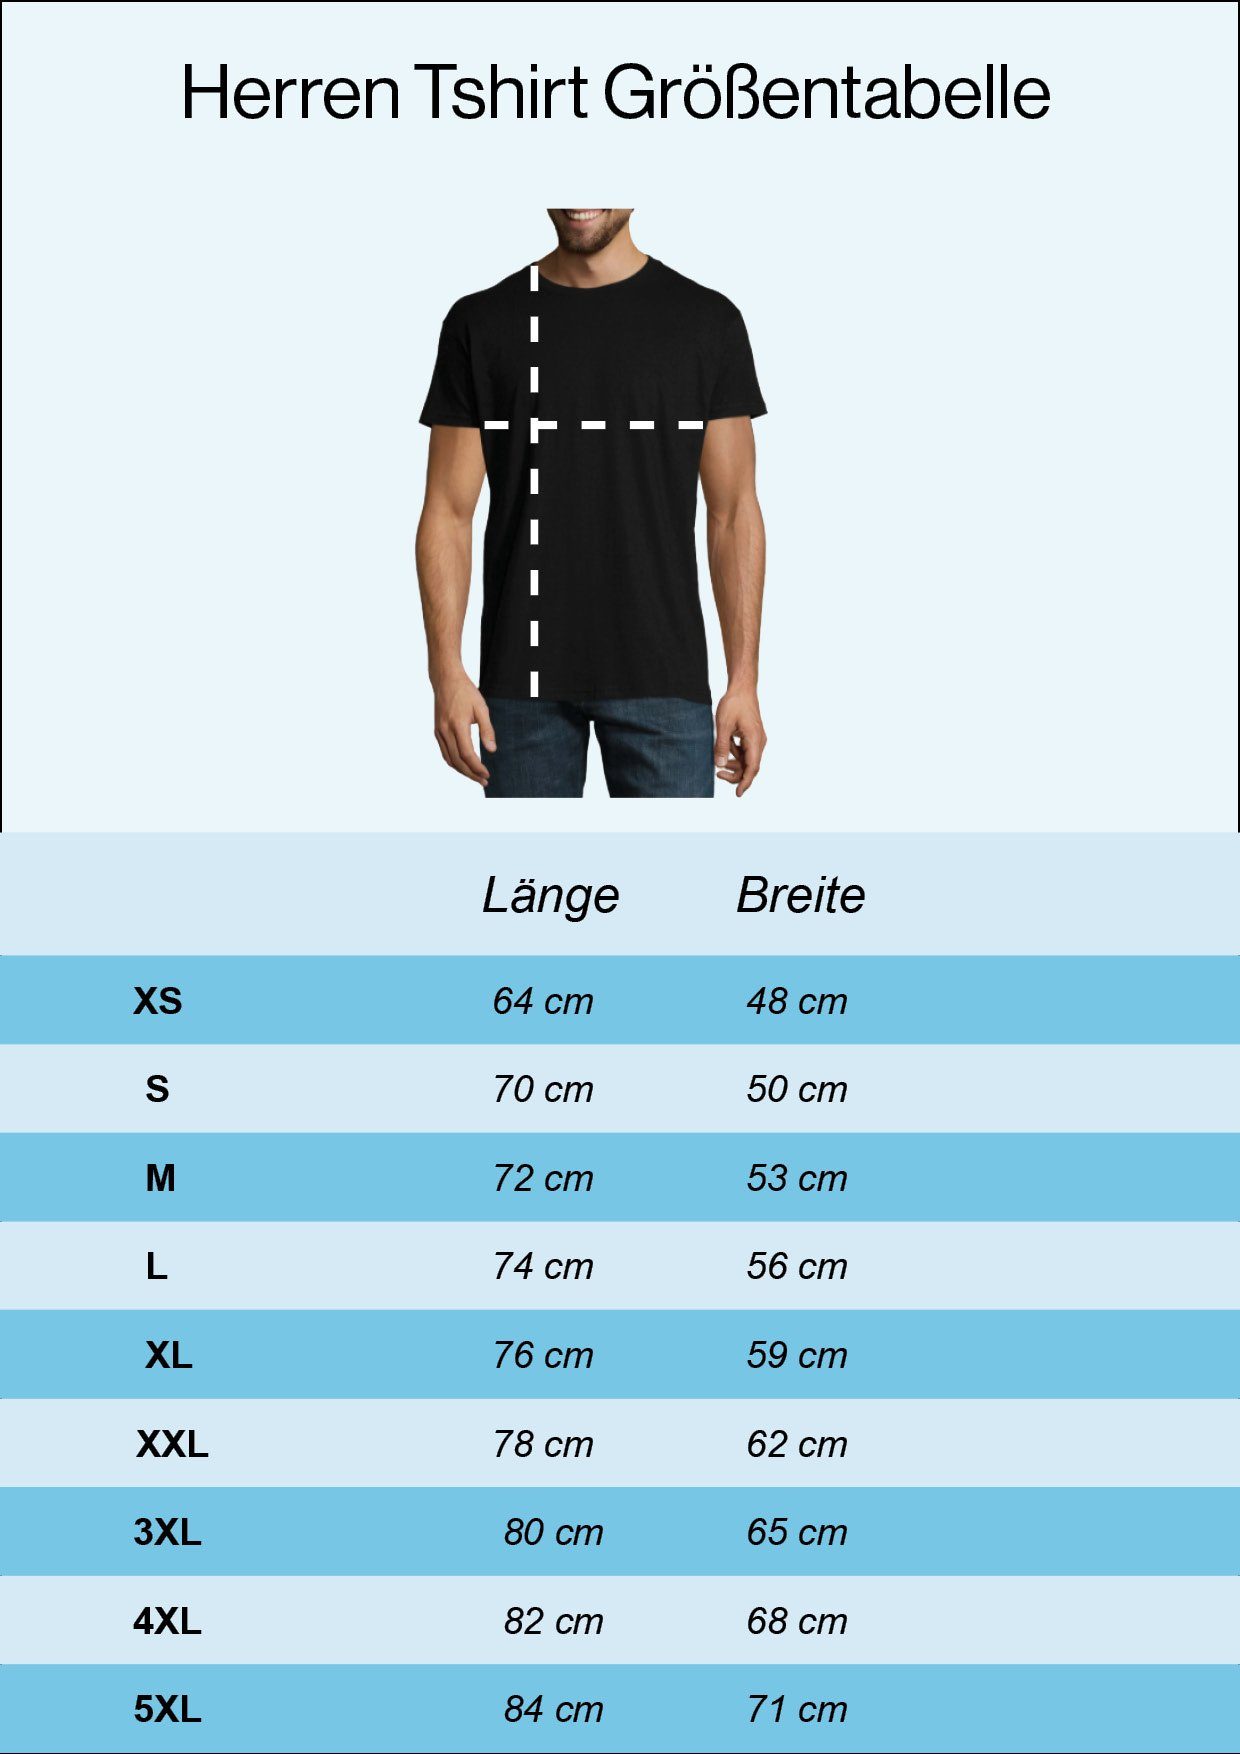 Designz Storm Fun Weiss trendigem Trooper Herren Frontprint T-Shirt mit Youth T-Shirt